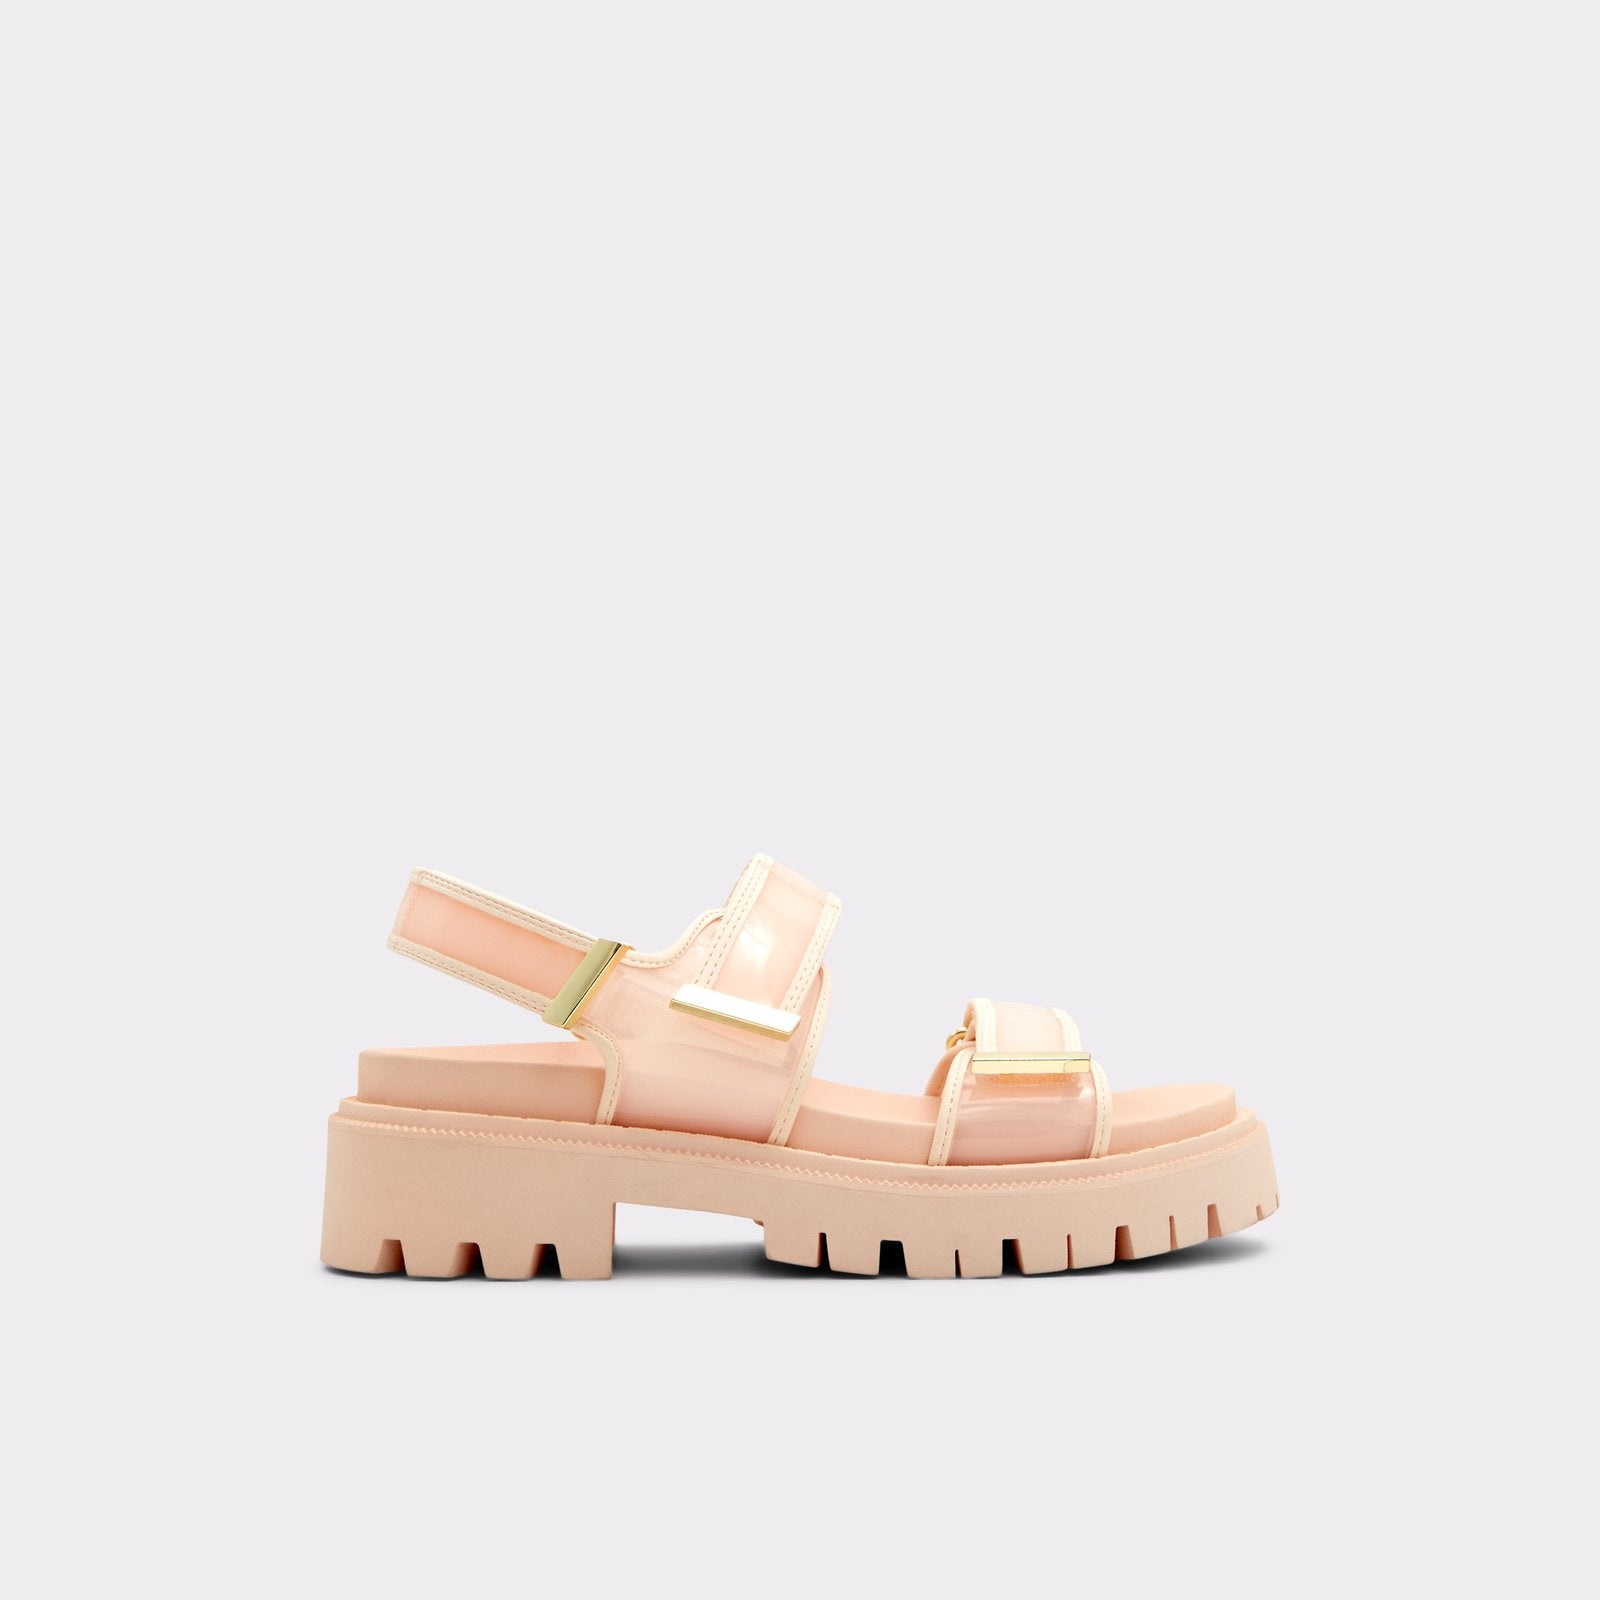 Sanddy / Flat Sandals Women Shoes - Light Pink - ALDO KSA